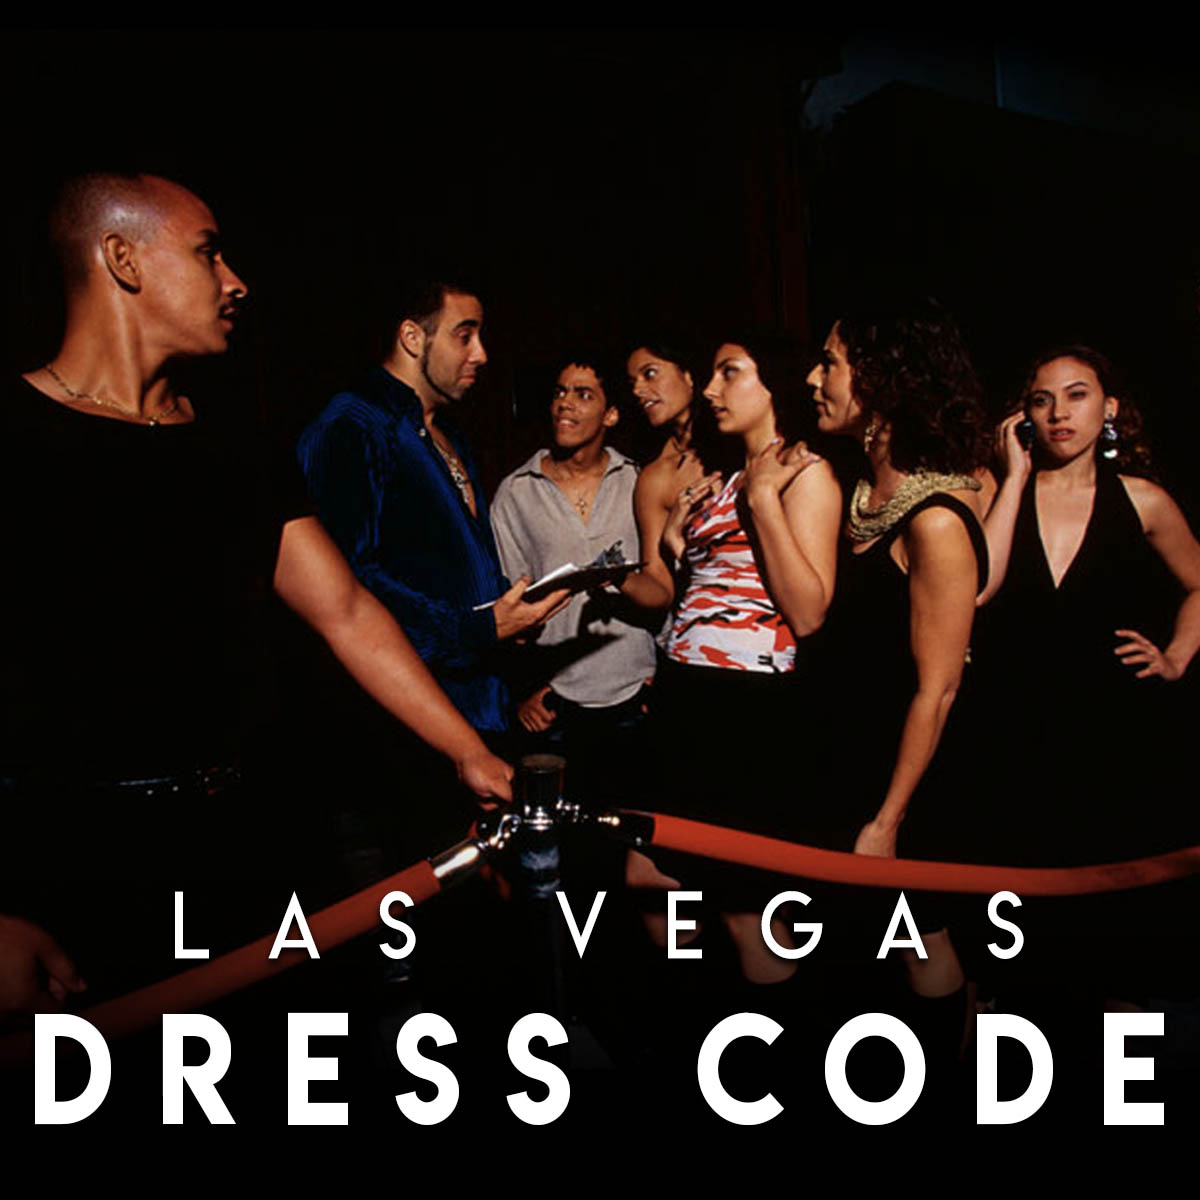 Shoes That Meet The Nightclub Dress Code In Las Vegas